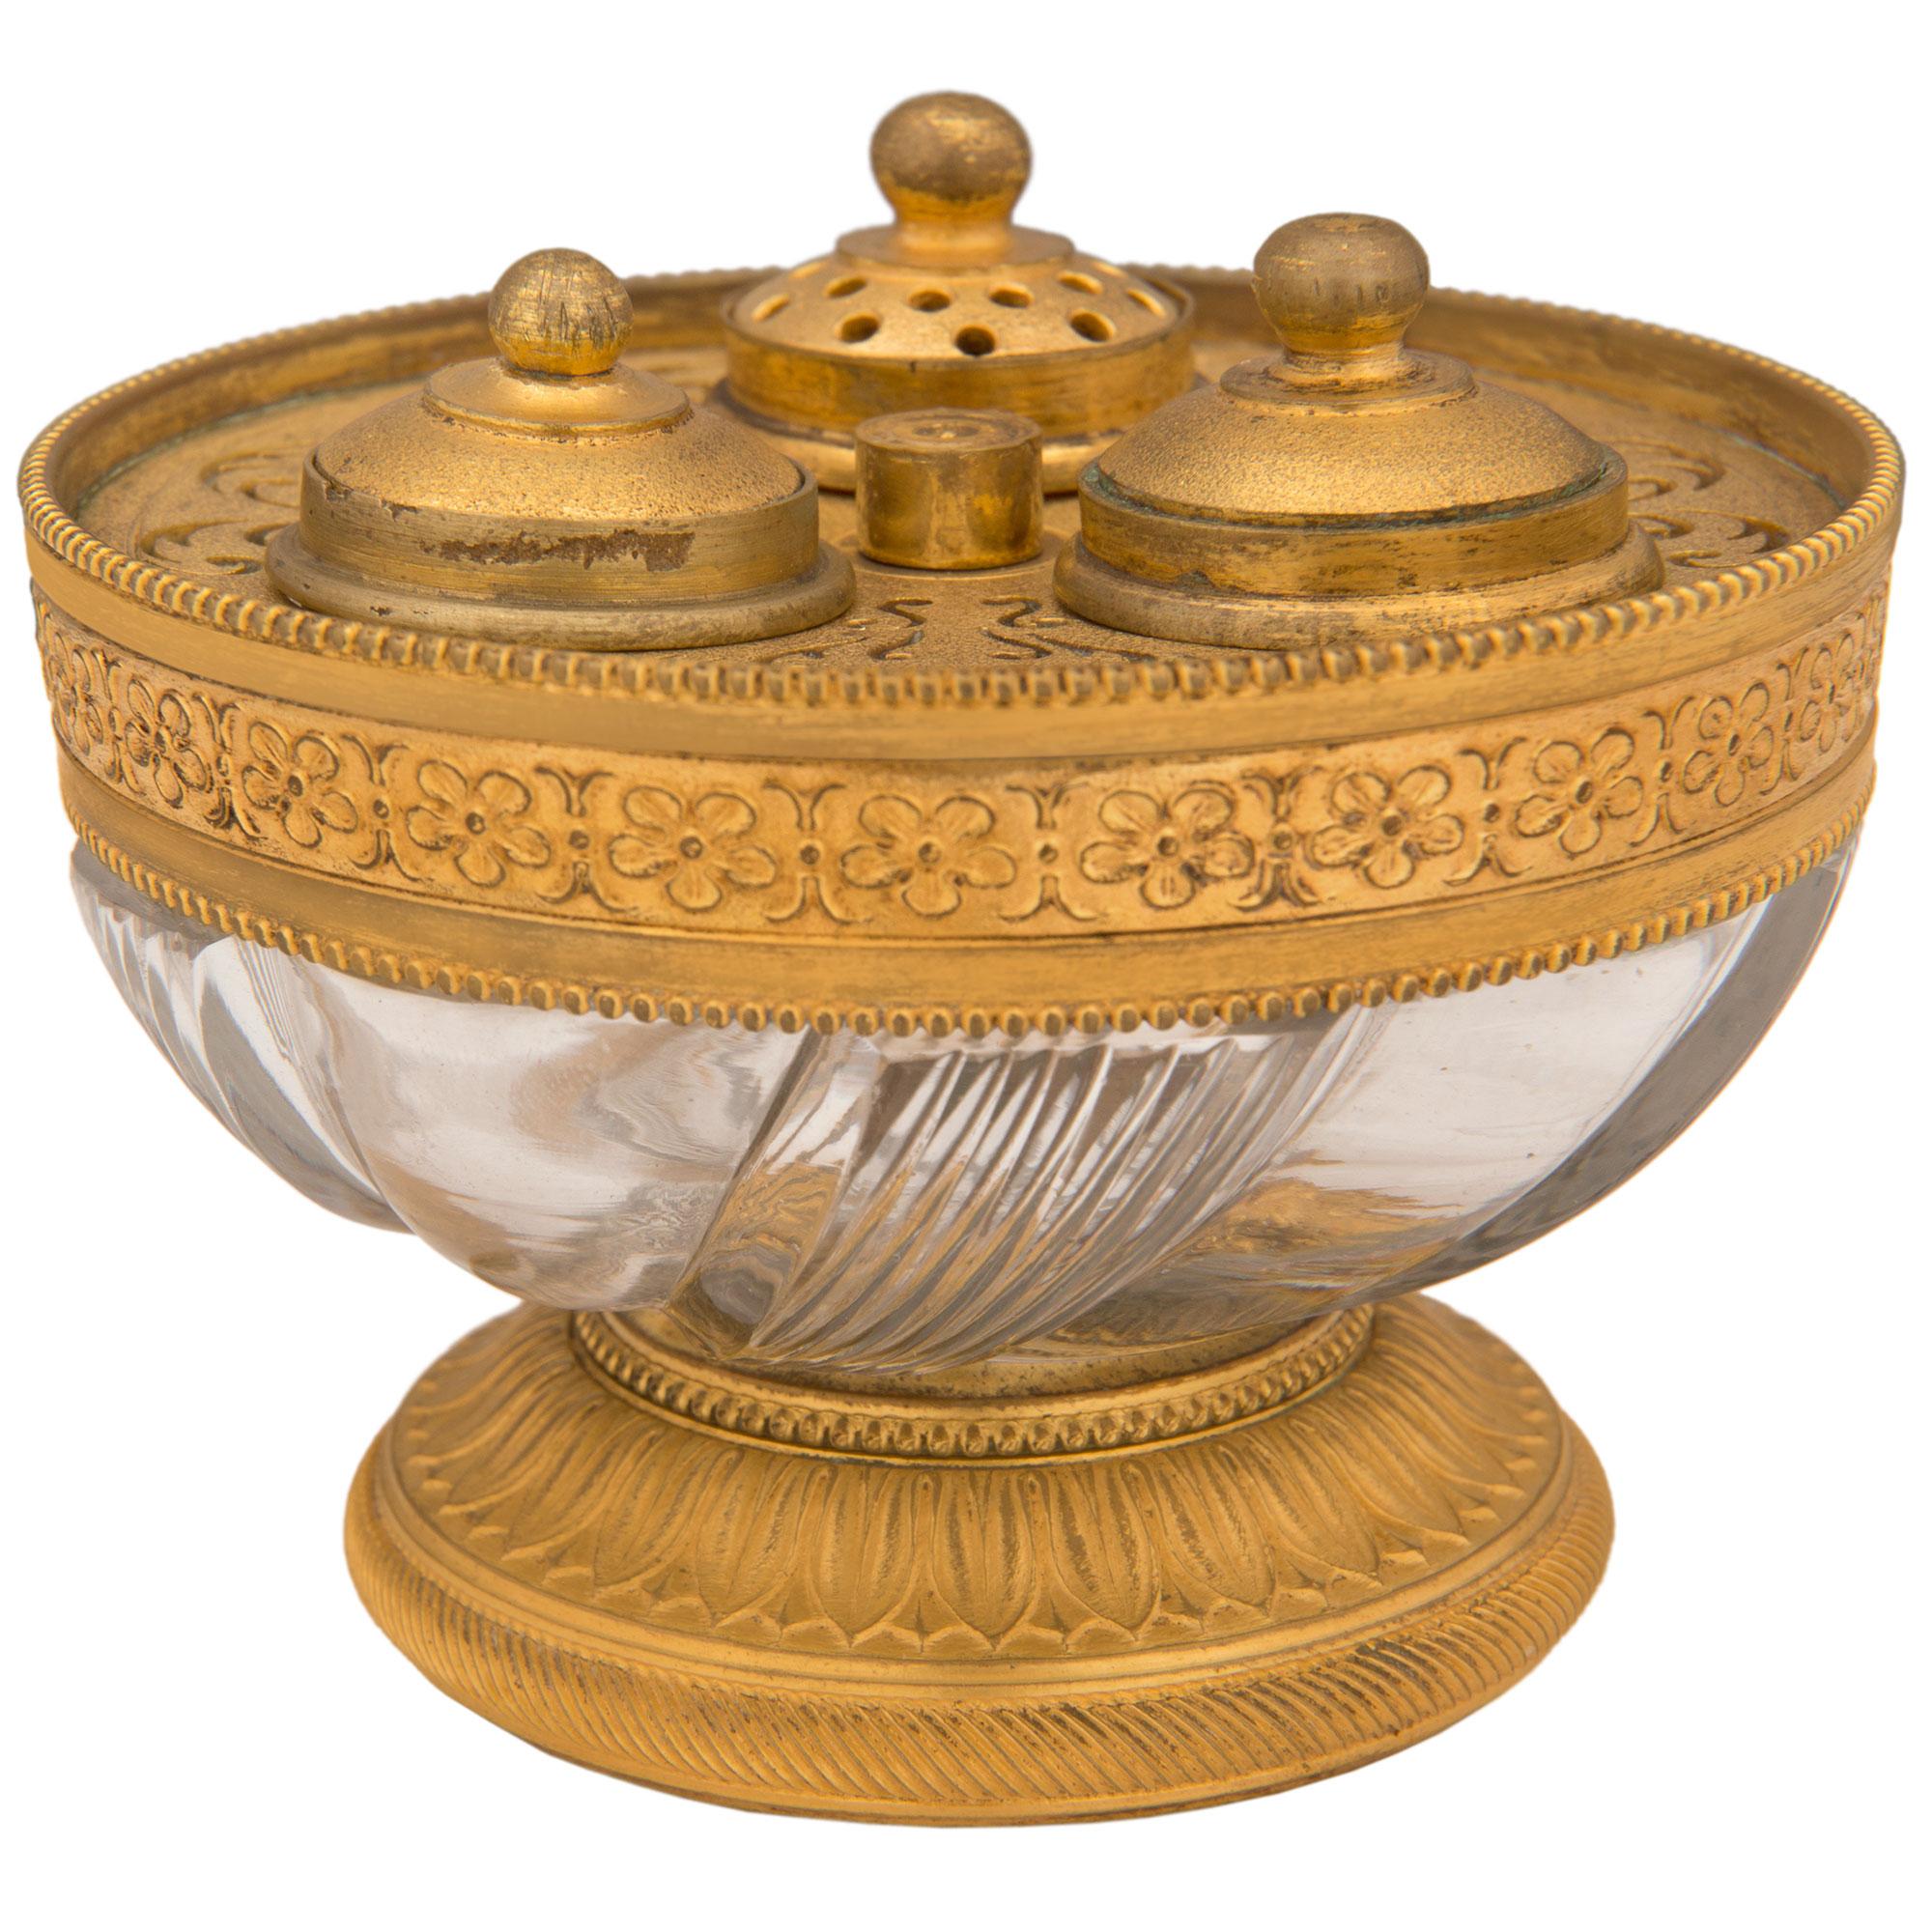 Un élégant encrier français du 19ème siècle de style Louis XVI en bronze doré et cristal. L'encrier est surmonté d'une fine base circulaire en bronze doré avec un joli motif de palmettes cannelées et richement ciselées. Au-dessus de la base finement